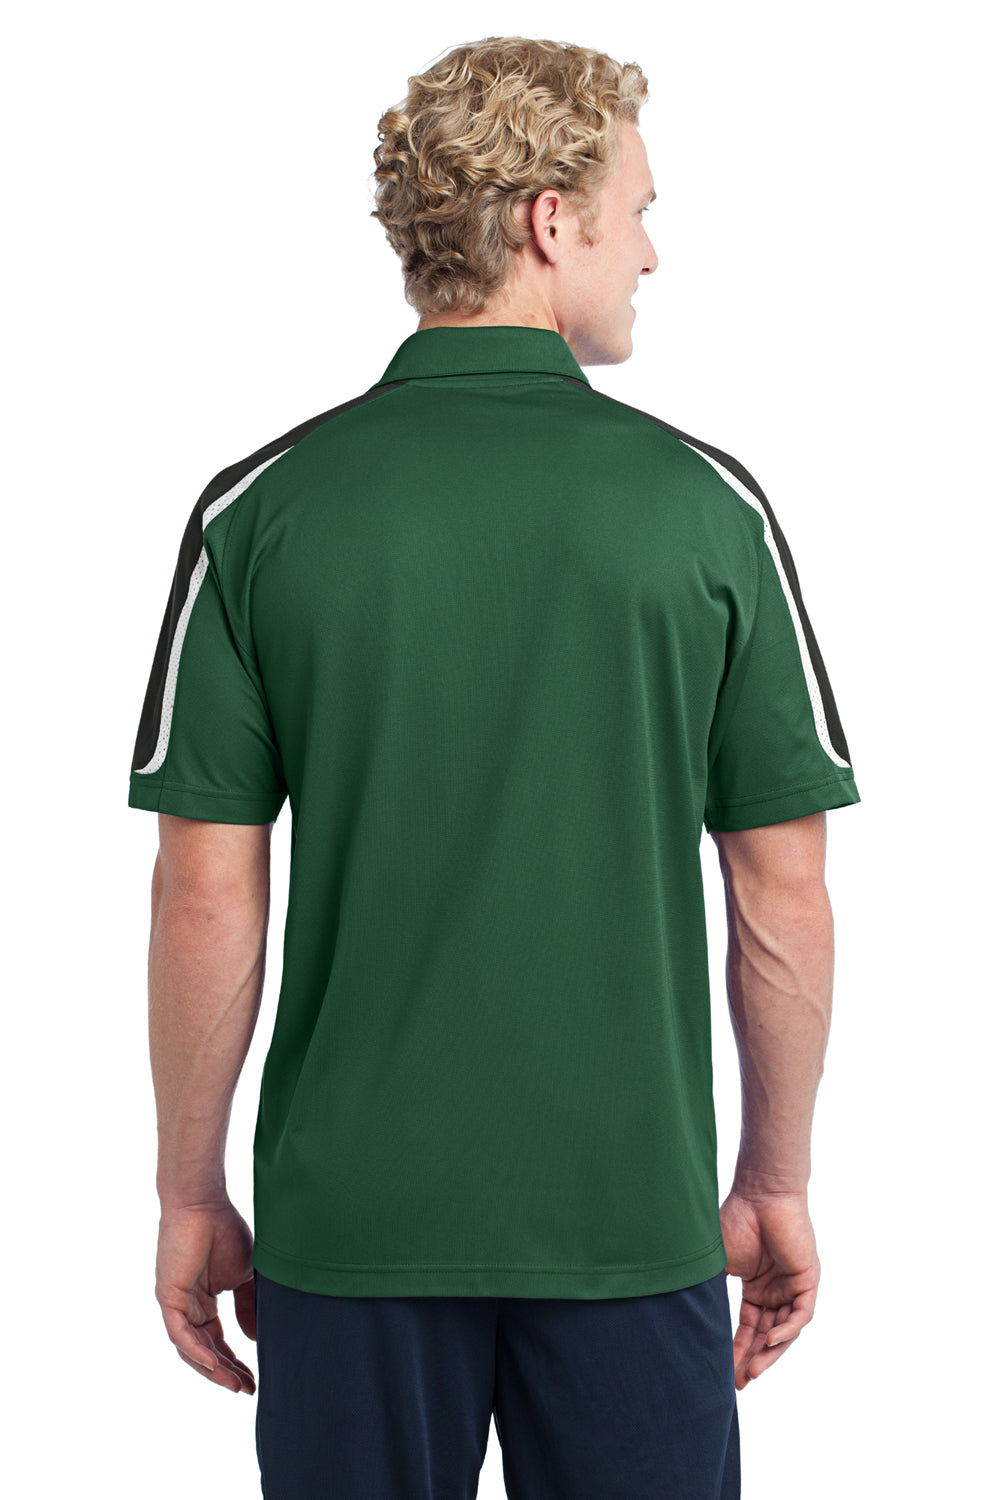 Sport-Tek ST658 Mens Sport-Wick Moisture Wicking Short Sleeve Polo Shirt Forest Green/White/Black Back